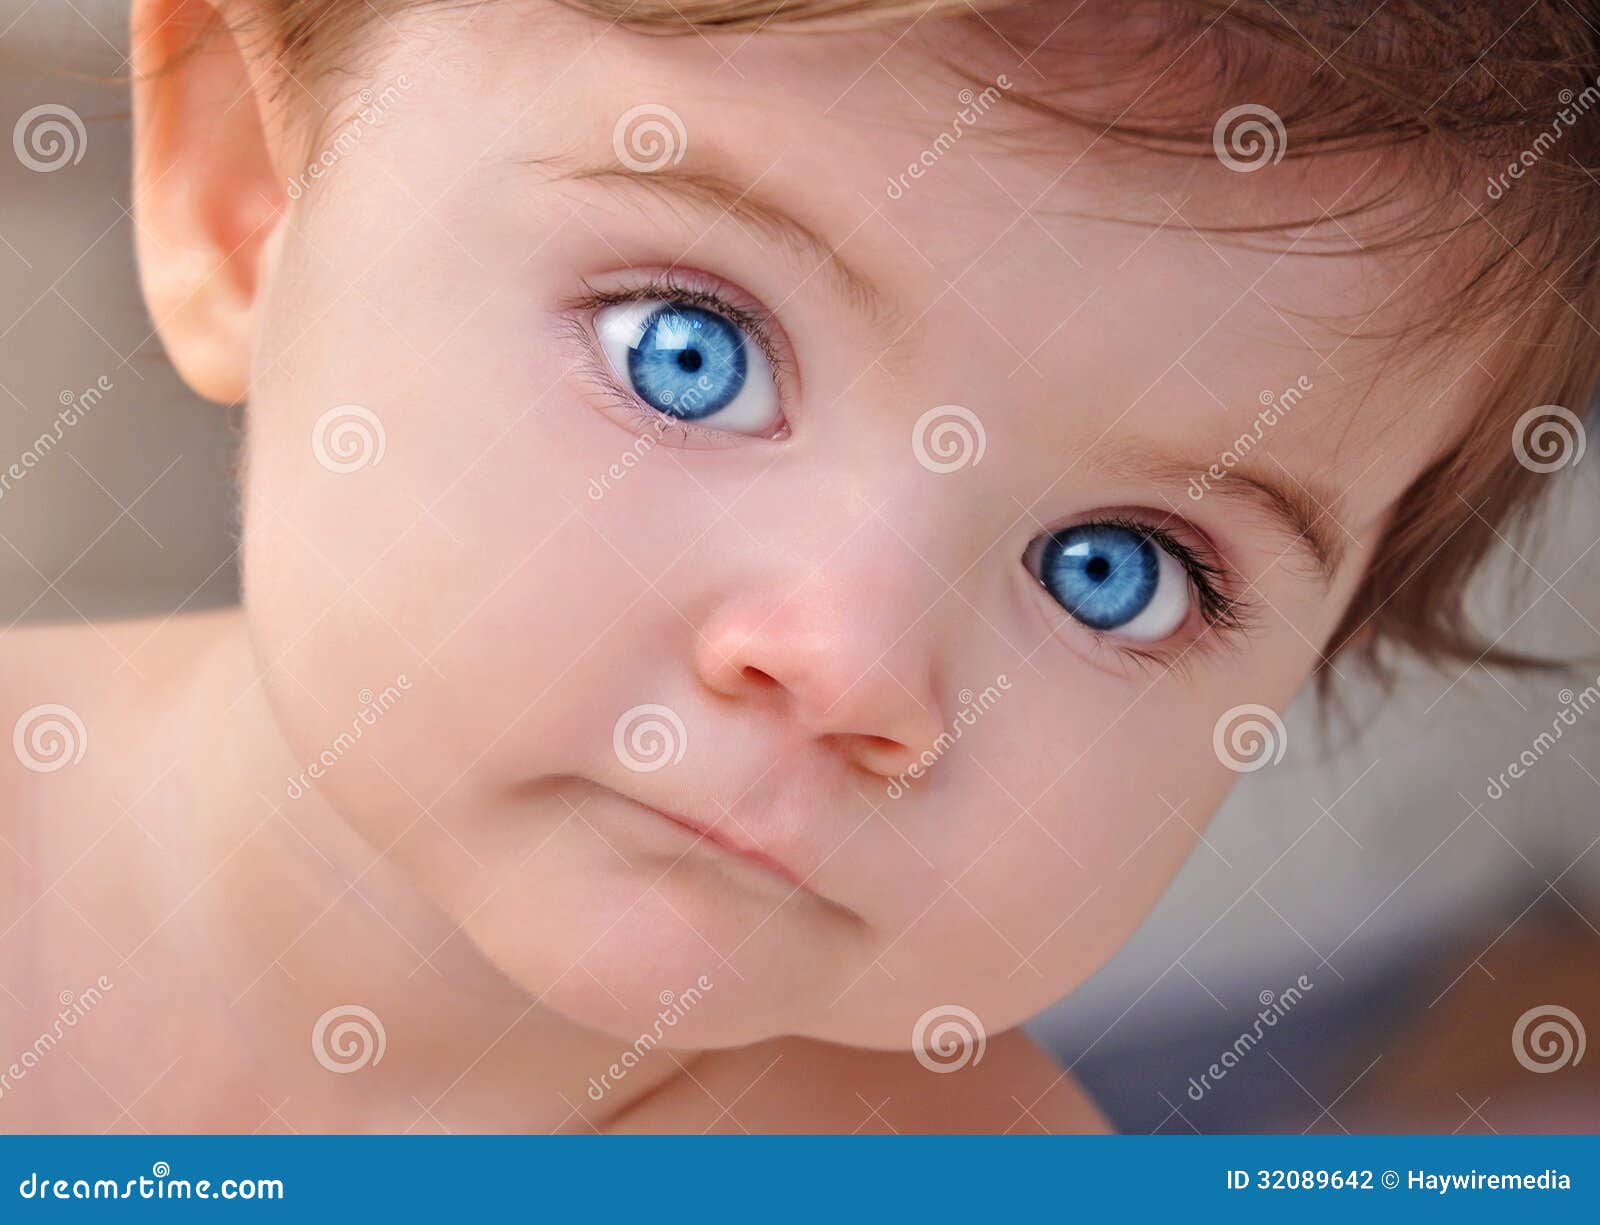 Petit Portrait Mignon De Plan Rapproche De Yeux De Bleus Layette Photo Stock Image Du Enfant Innocent 3642